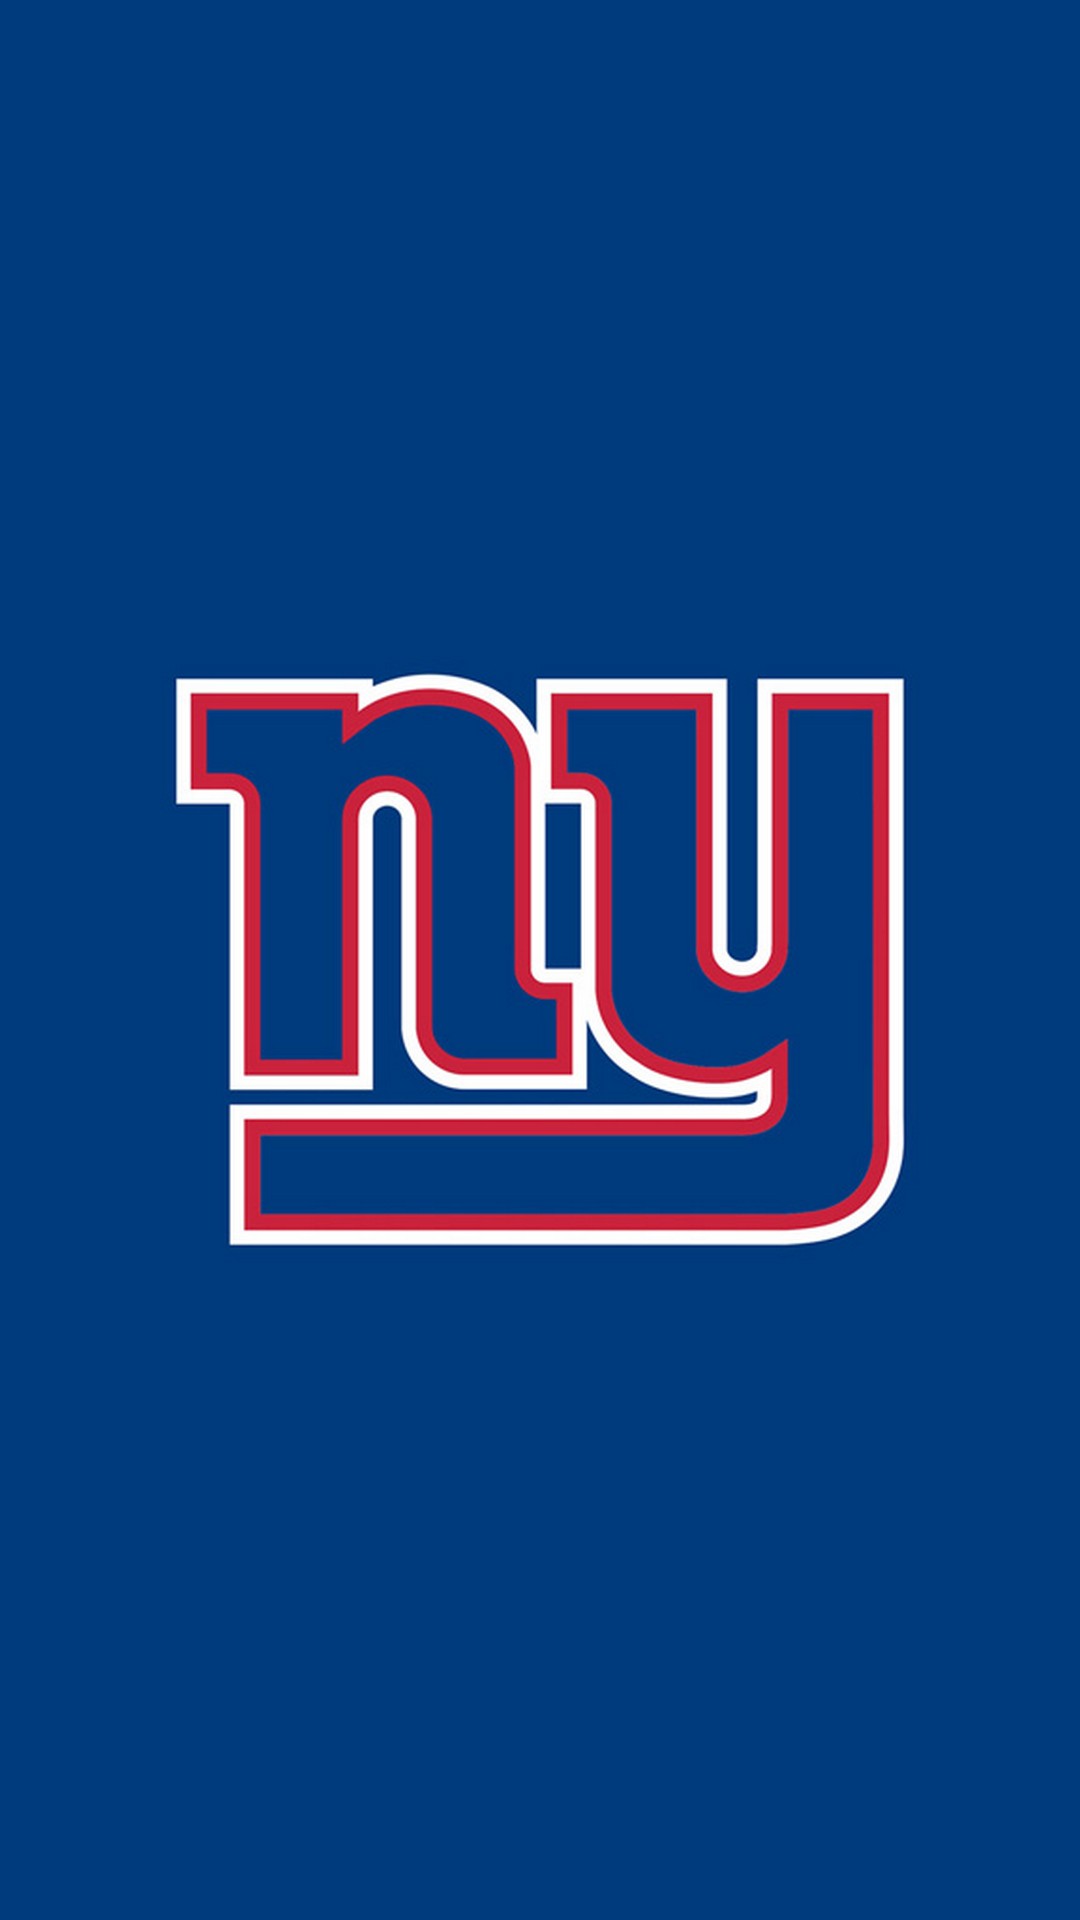 New York Giants iPhone Screen Wallpaper NFL iPhone Wallpaper